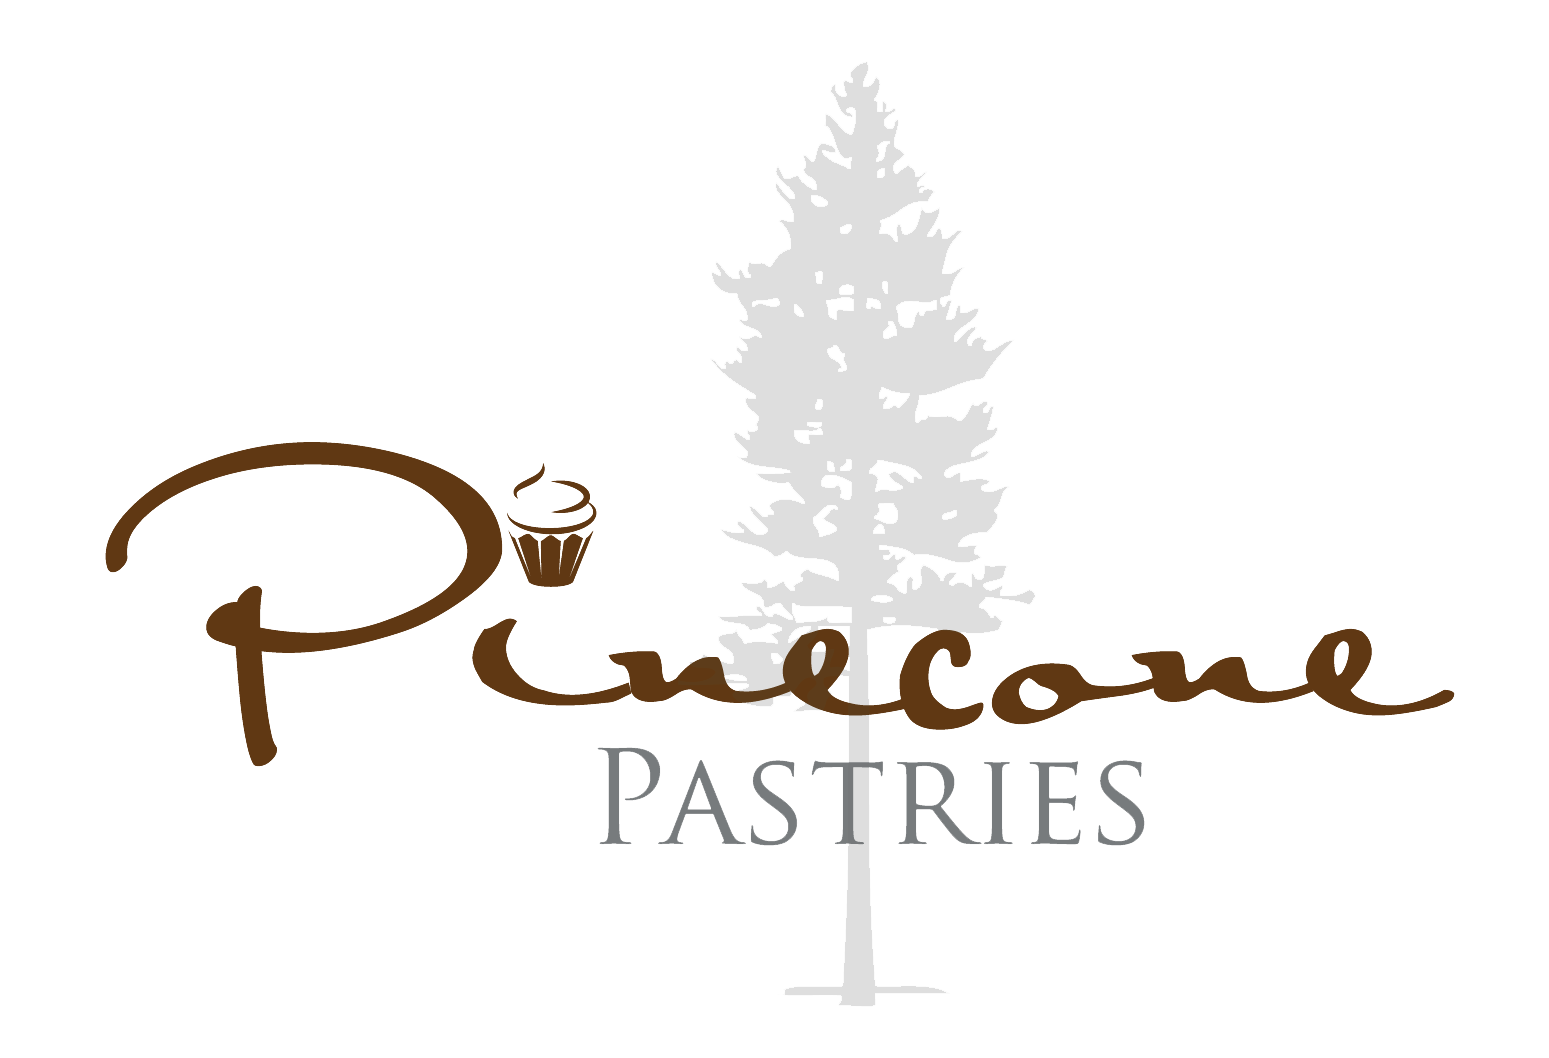 Pinecone Pastries